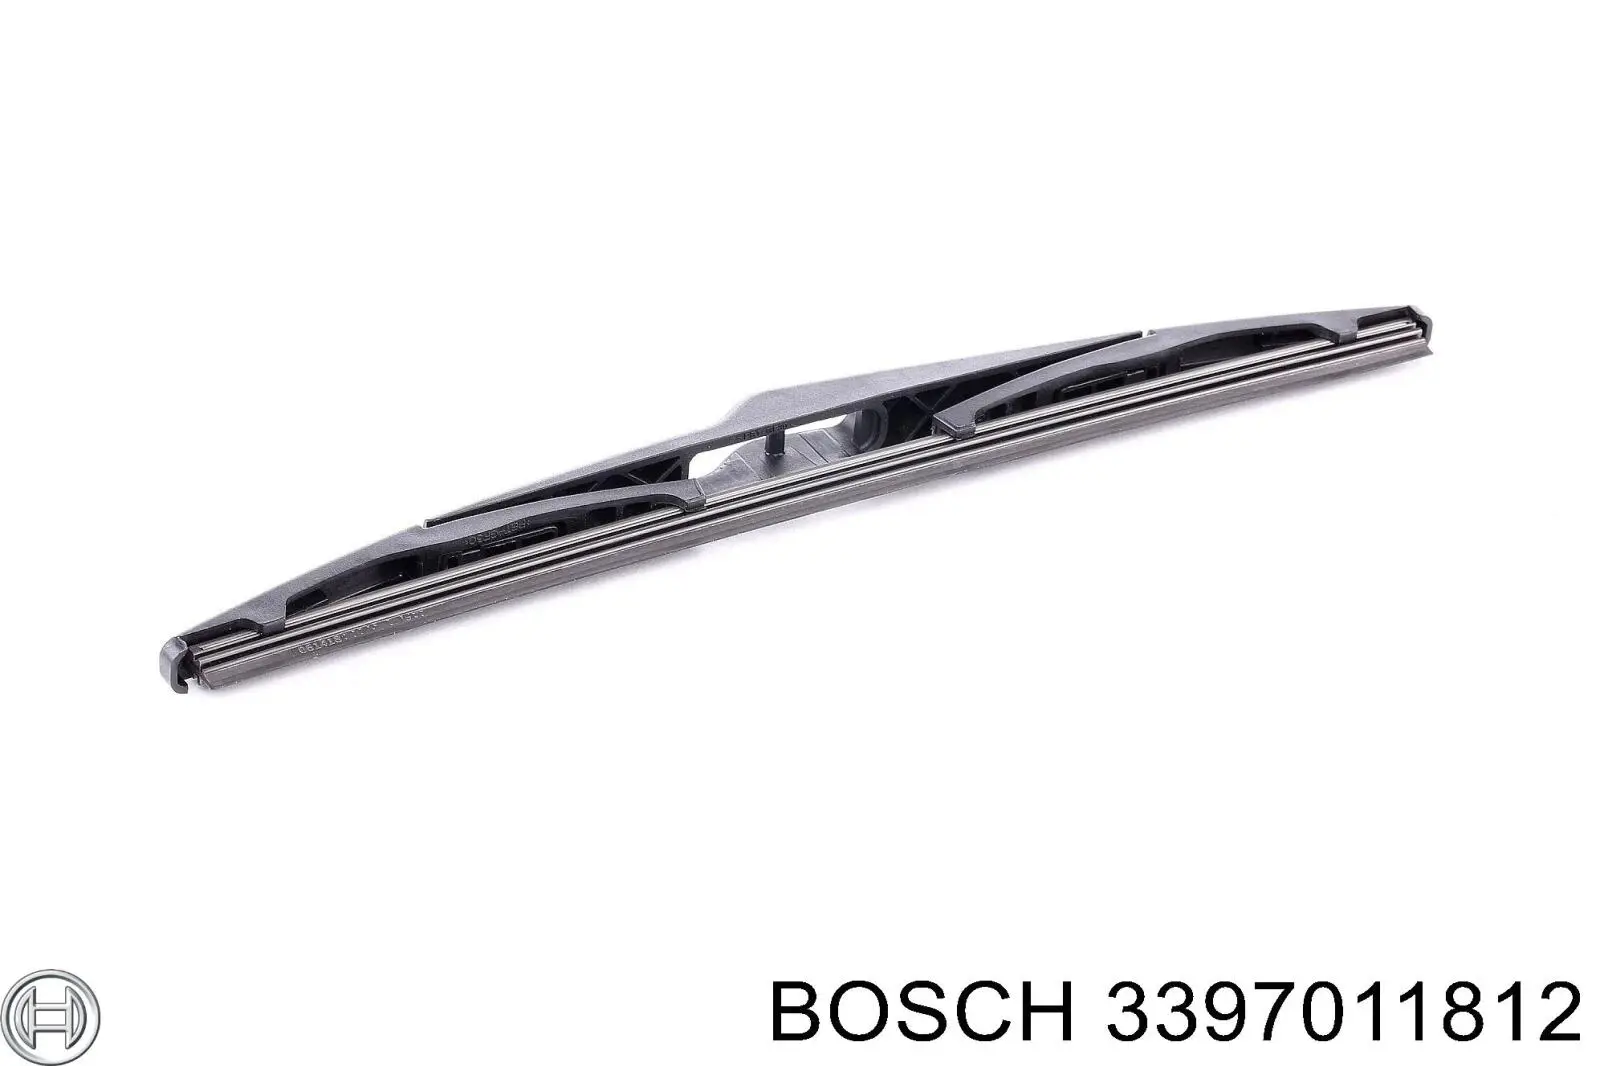 3397011812 Bosch limpiaparabrisas de luna trasera